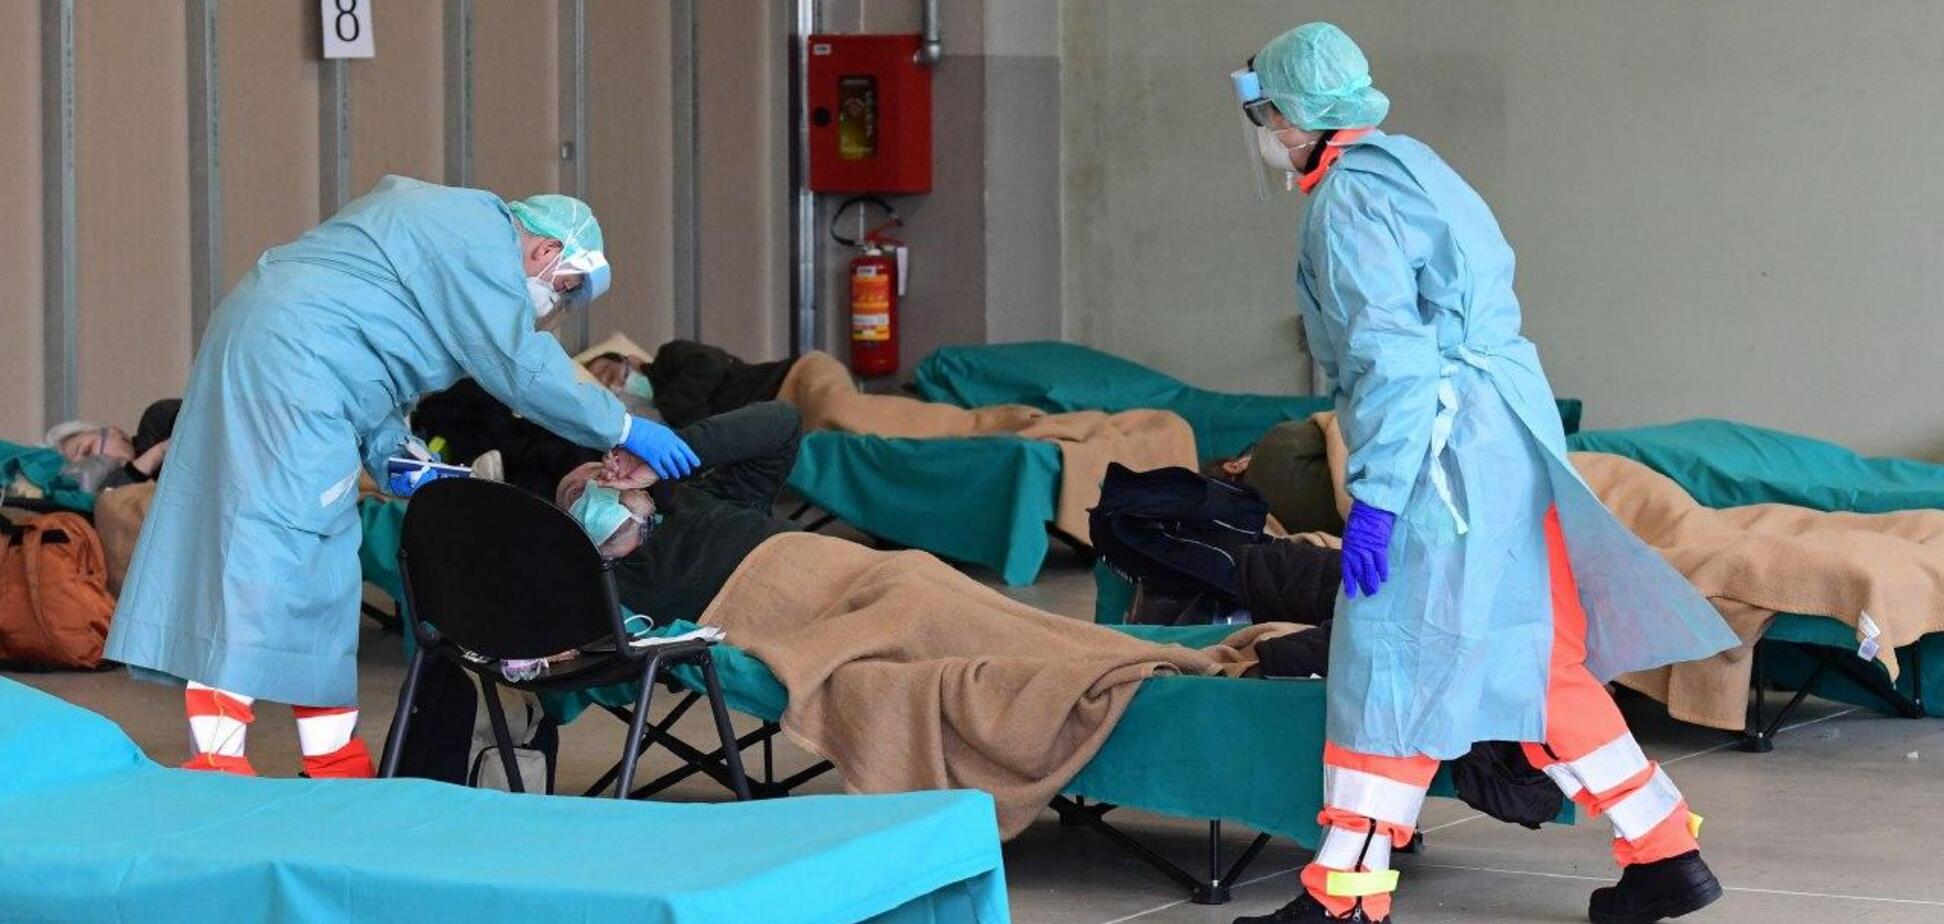 Впервые за несколько дней: в Италии уменьшилось количество погибших от коронавируса